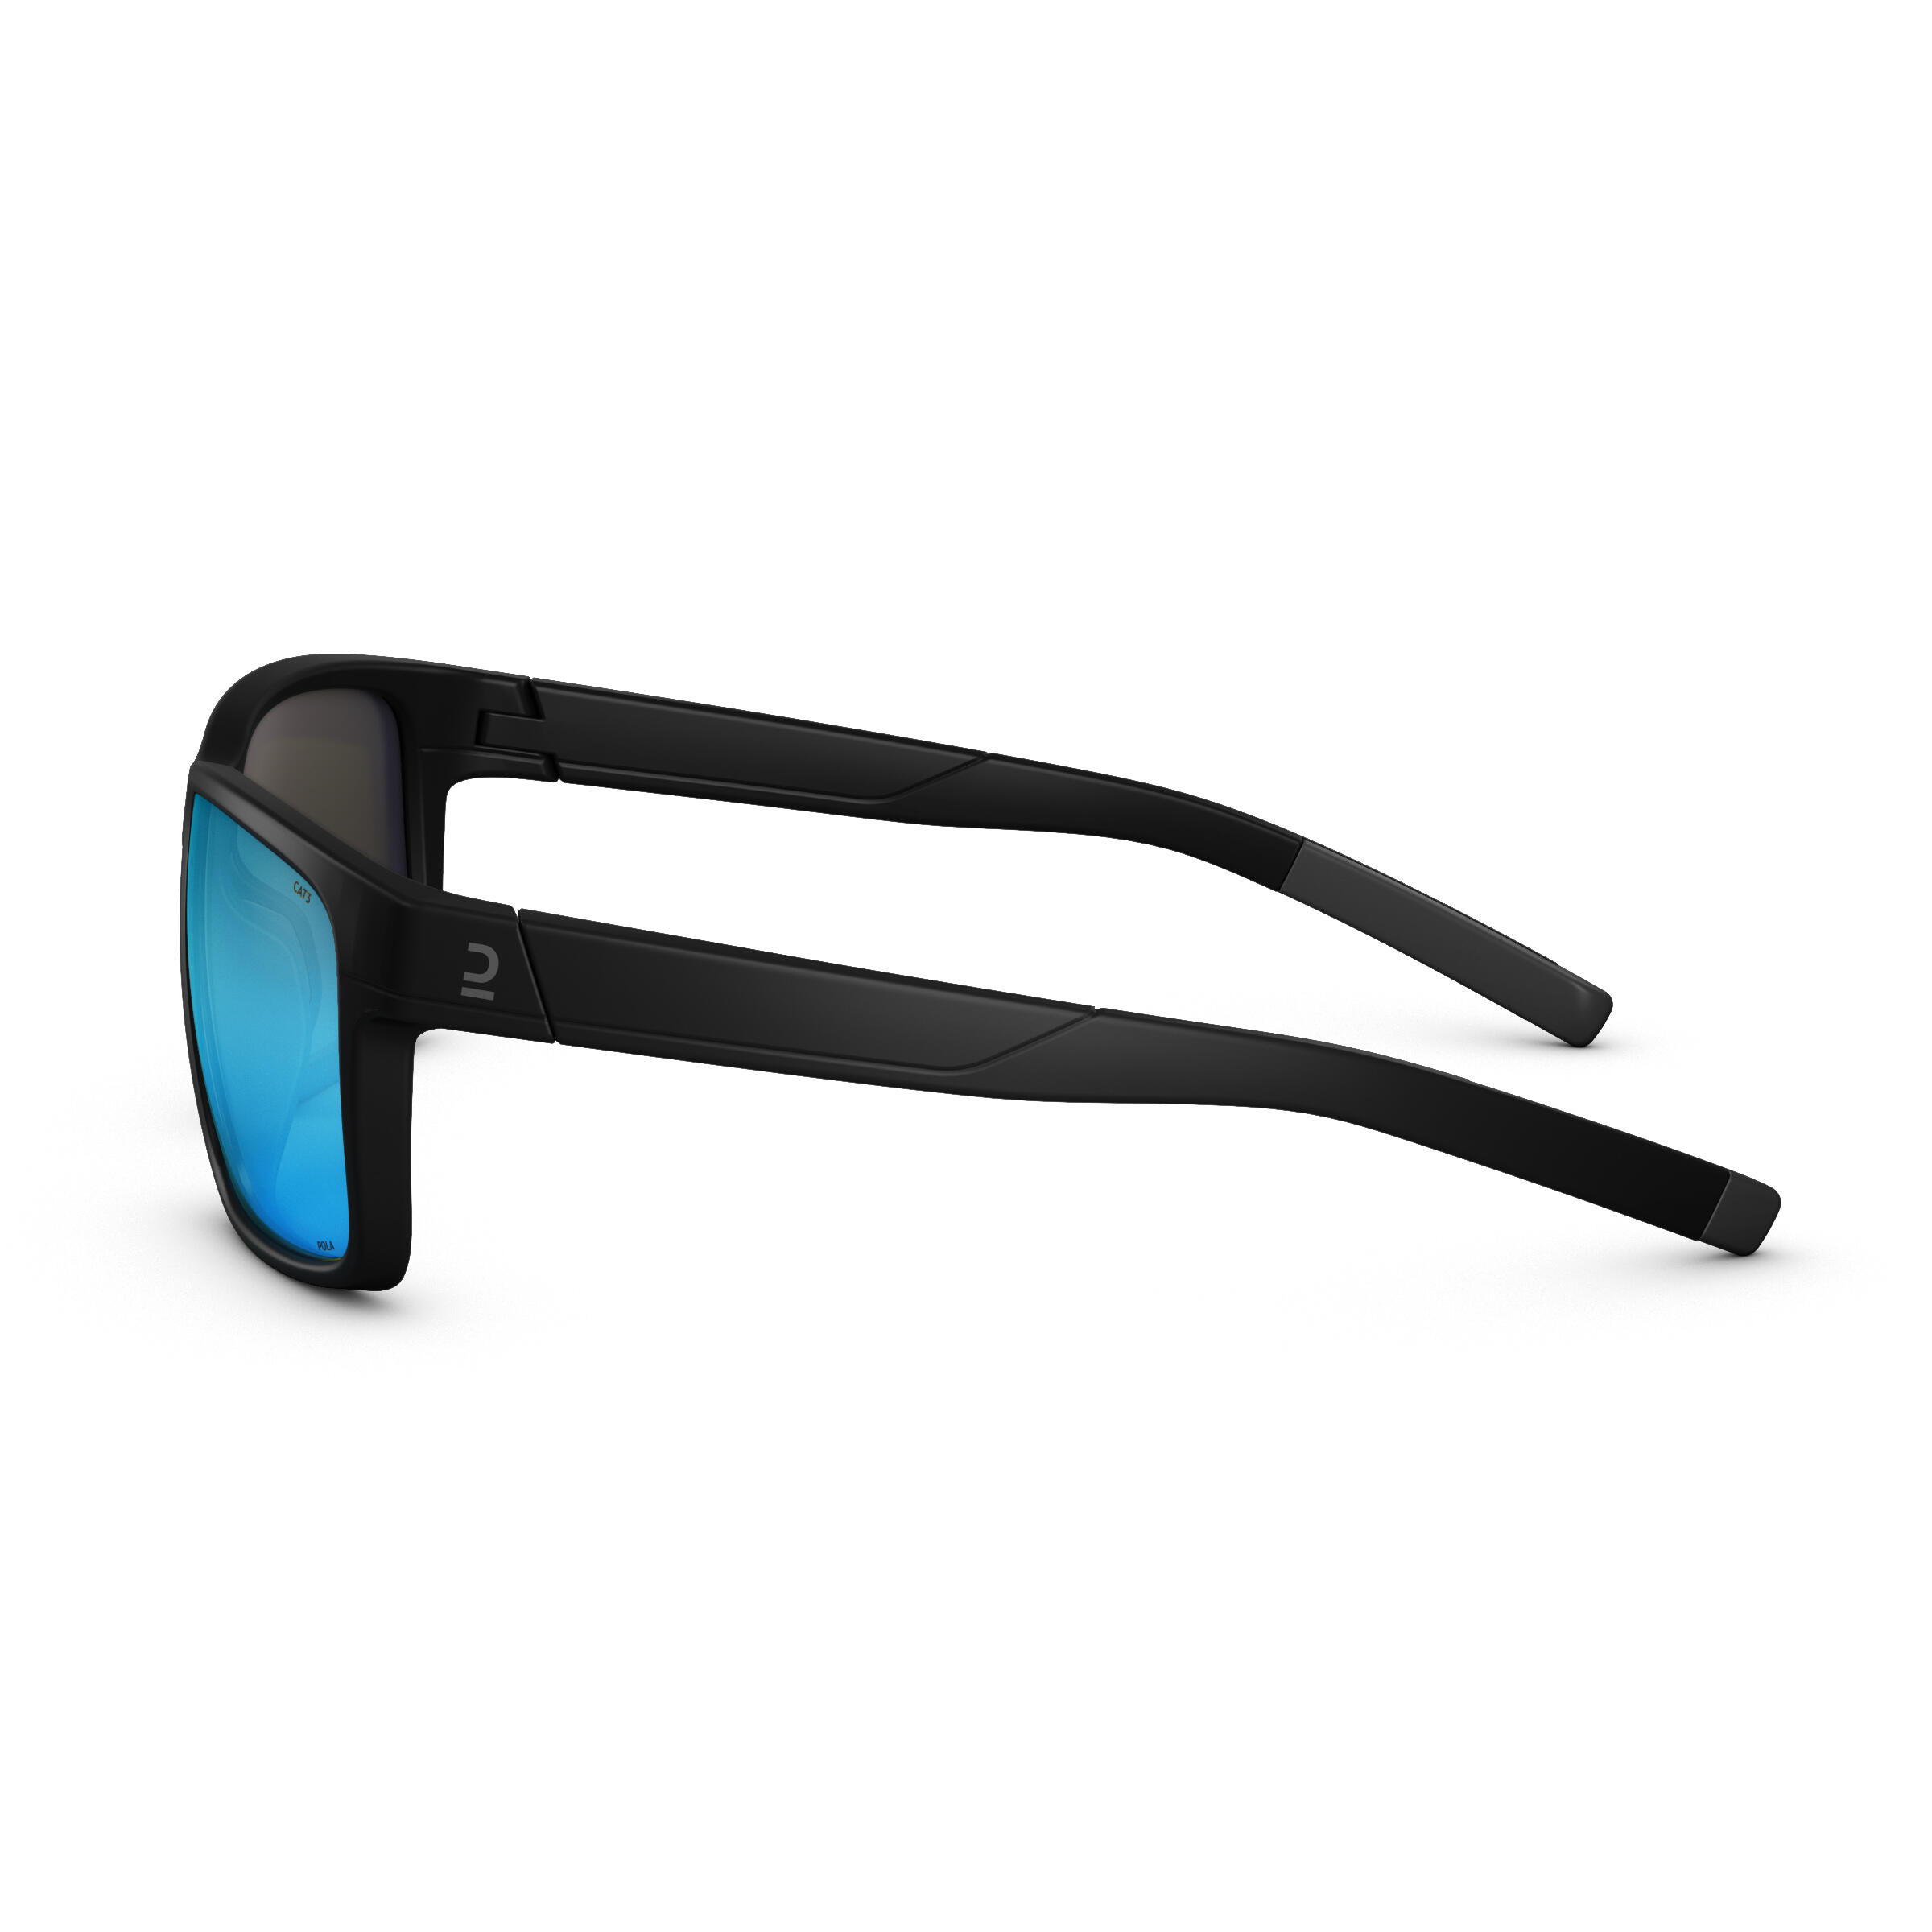 MH530 polarizing hiking sunglasses - Adults  - QUECHUA